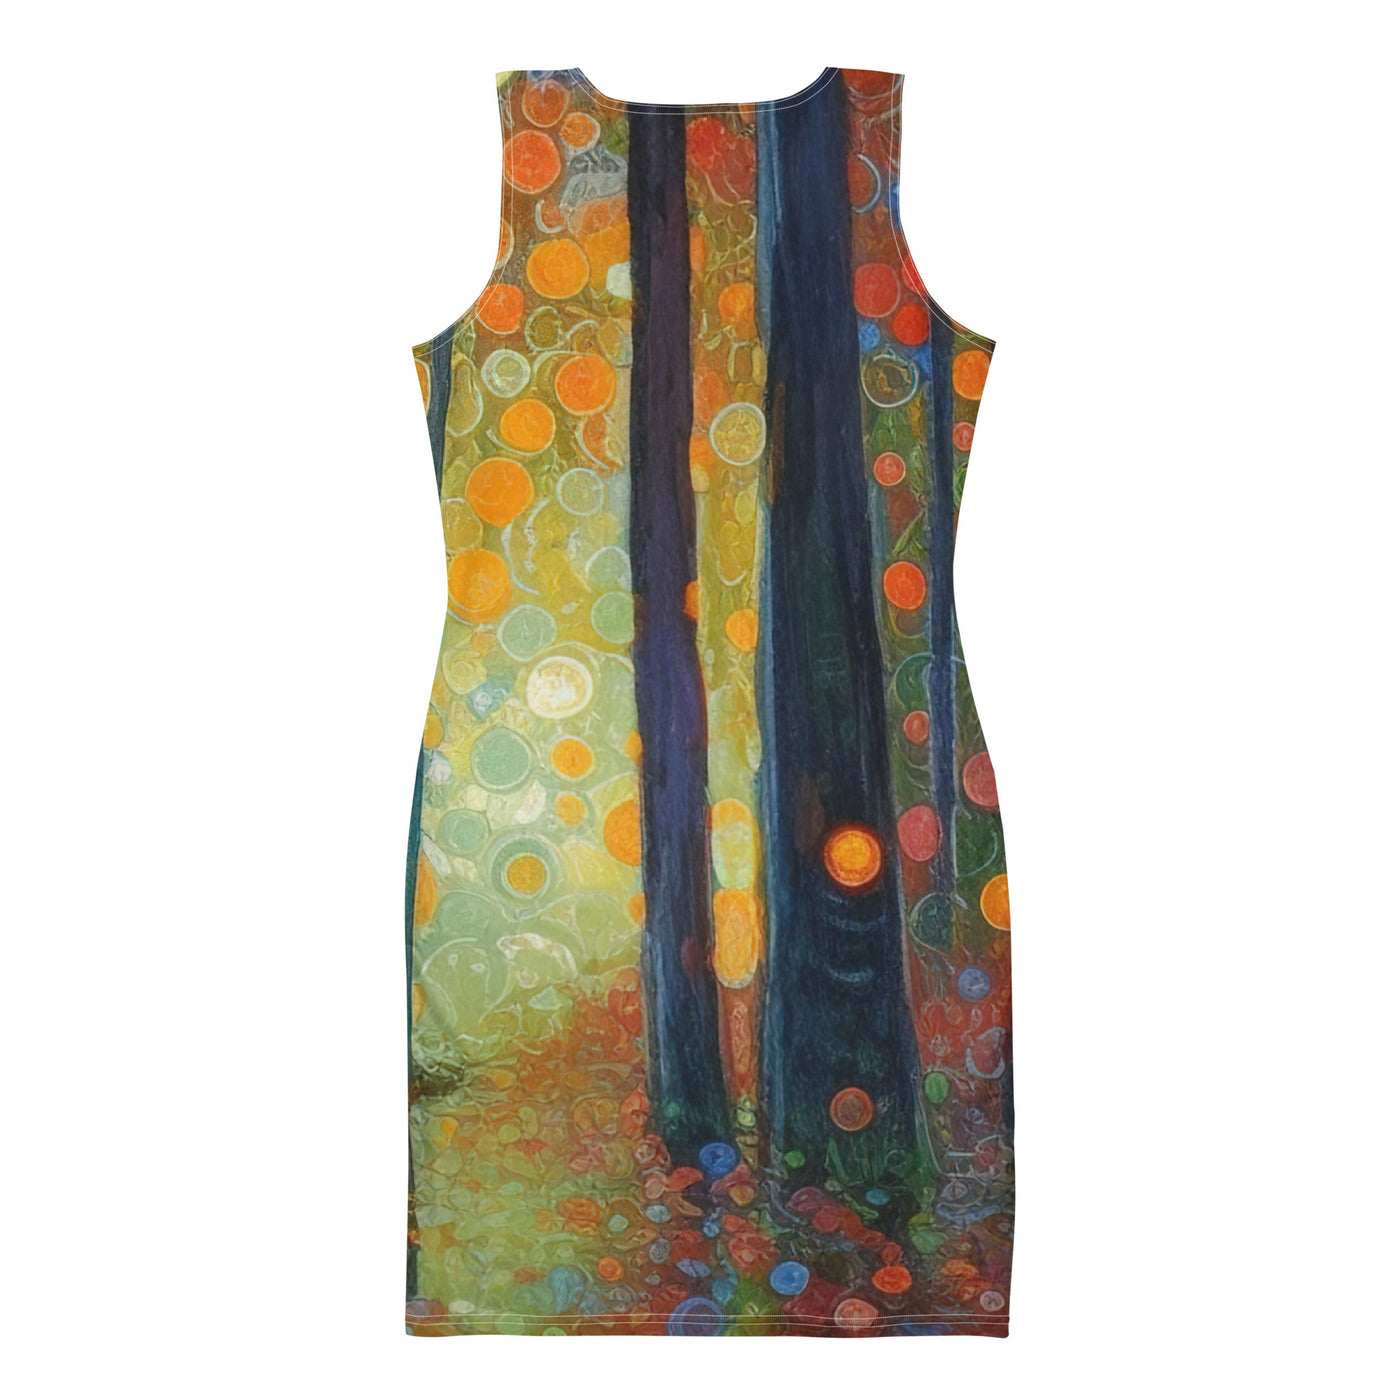 Wald voller Bäume - Herbstliche Stimmung - Malerei - Langes Damen Kleid (All-Over Print) camping xxx